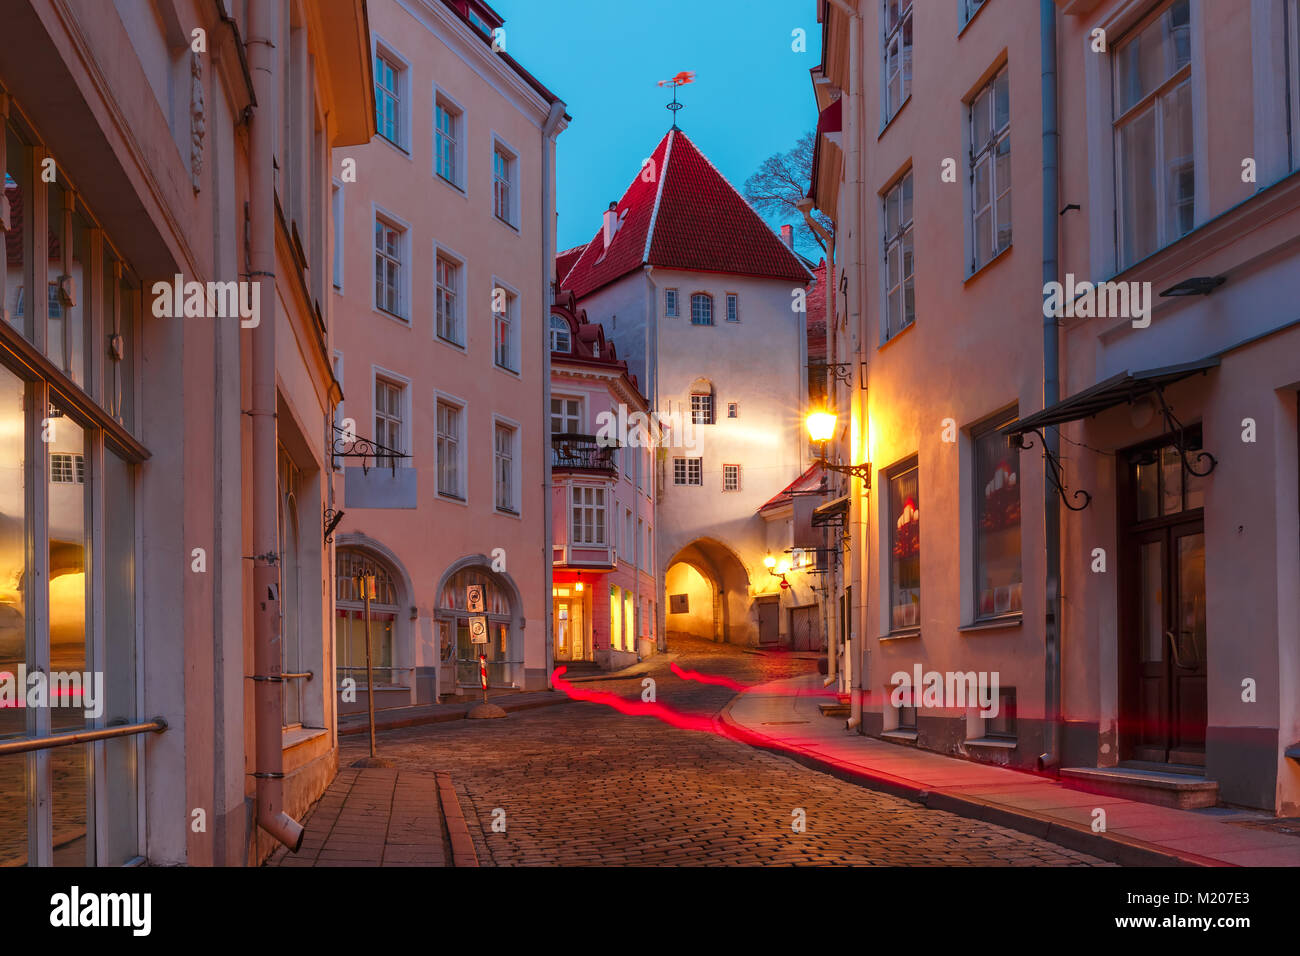 Evening street in the Old Town, Tallinn, Estonia Stock Photo